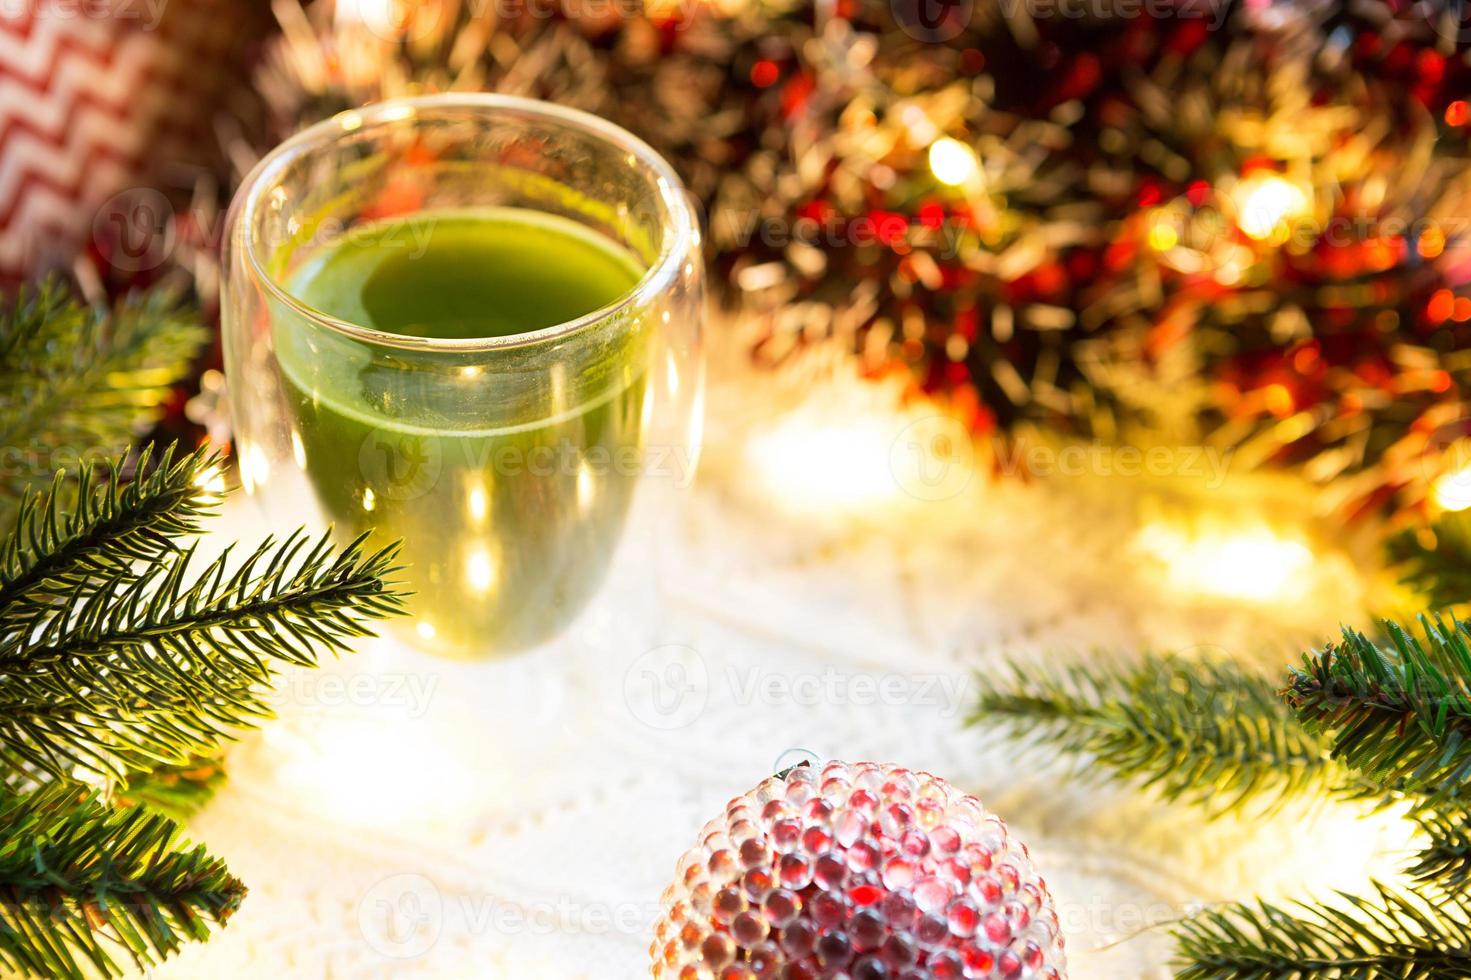 transparent dubbelväggig glas tumlare med japansk matcha te på tabell med jul dekor. ny år atmosfär, krans och glitter, gran gren, mysigt, stickat filt, boll, randig servett foto